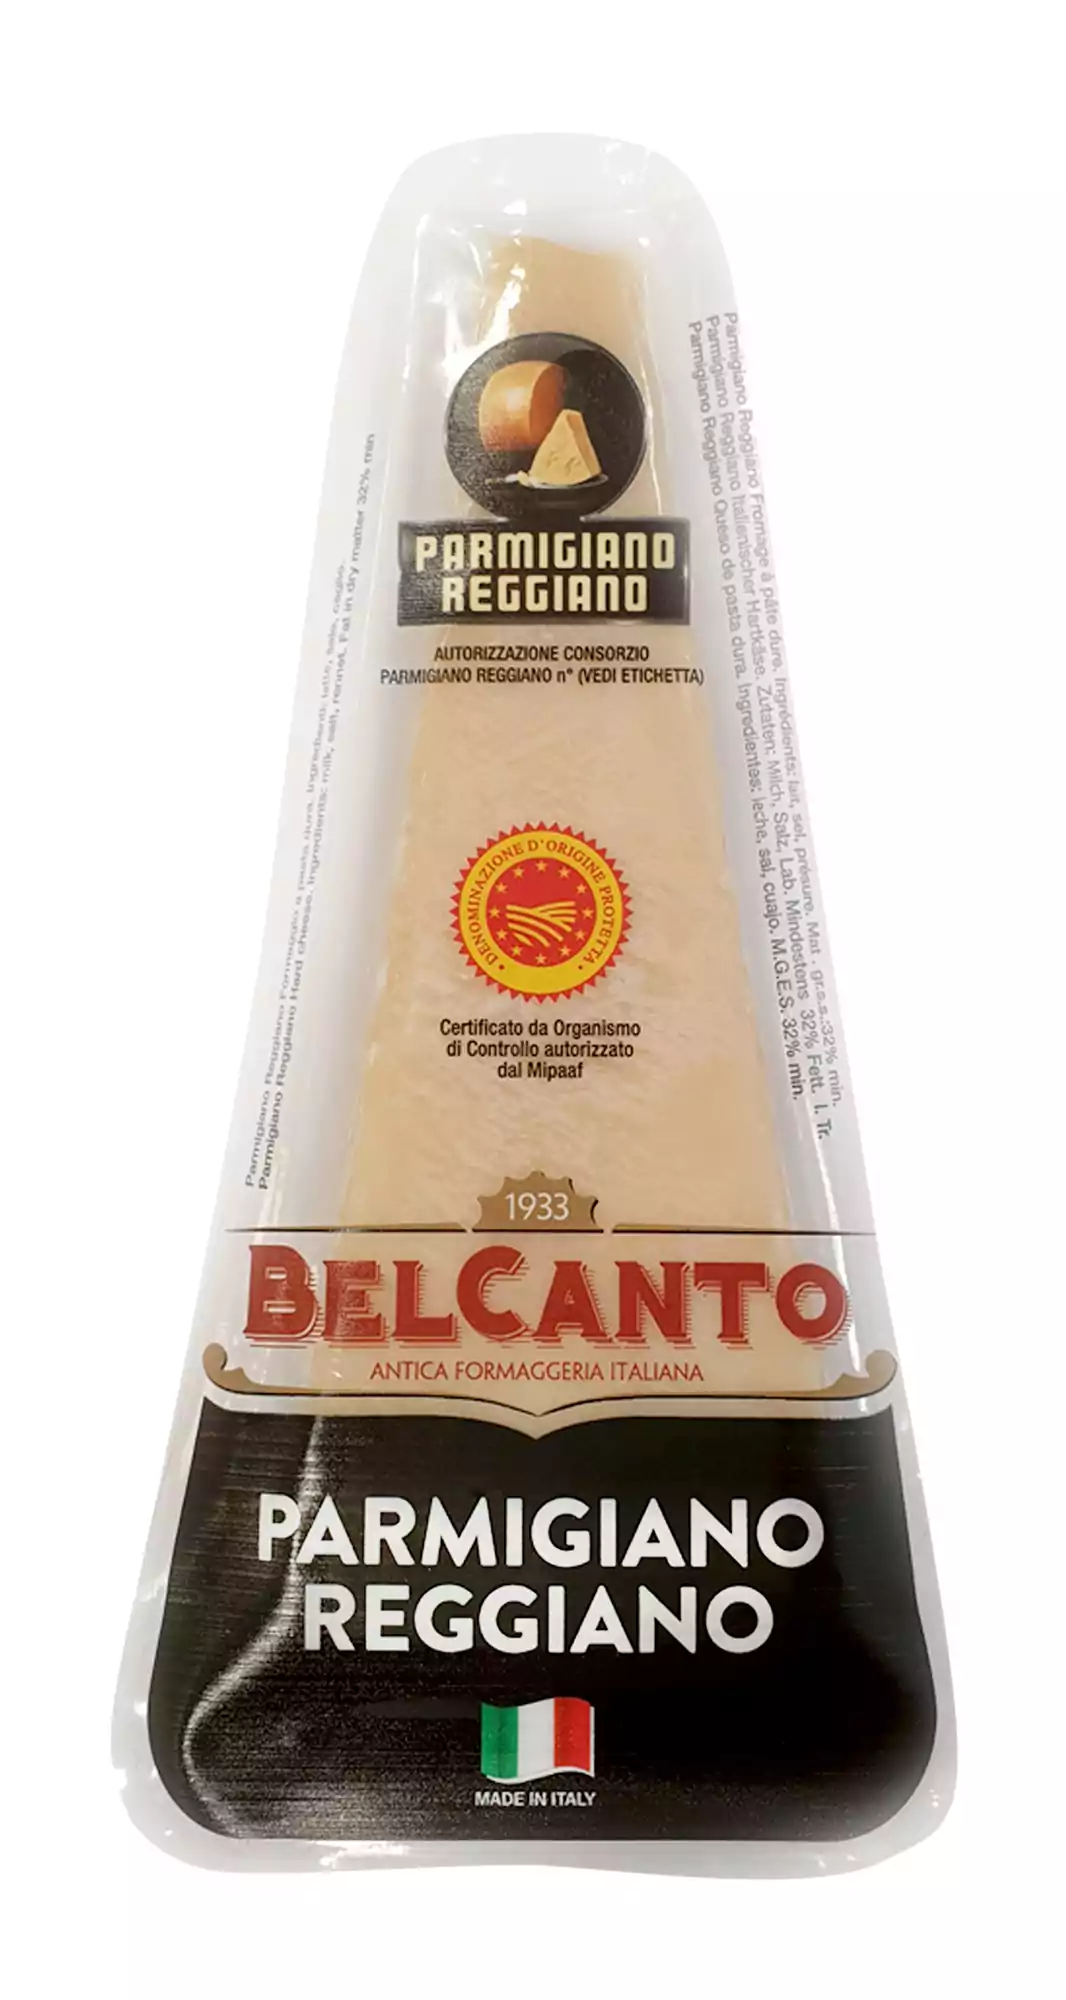 Parmigiano Reggiano, Belcanto